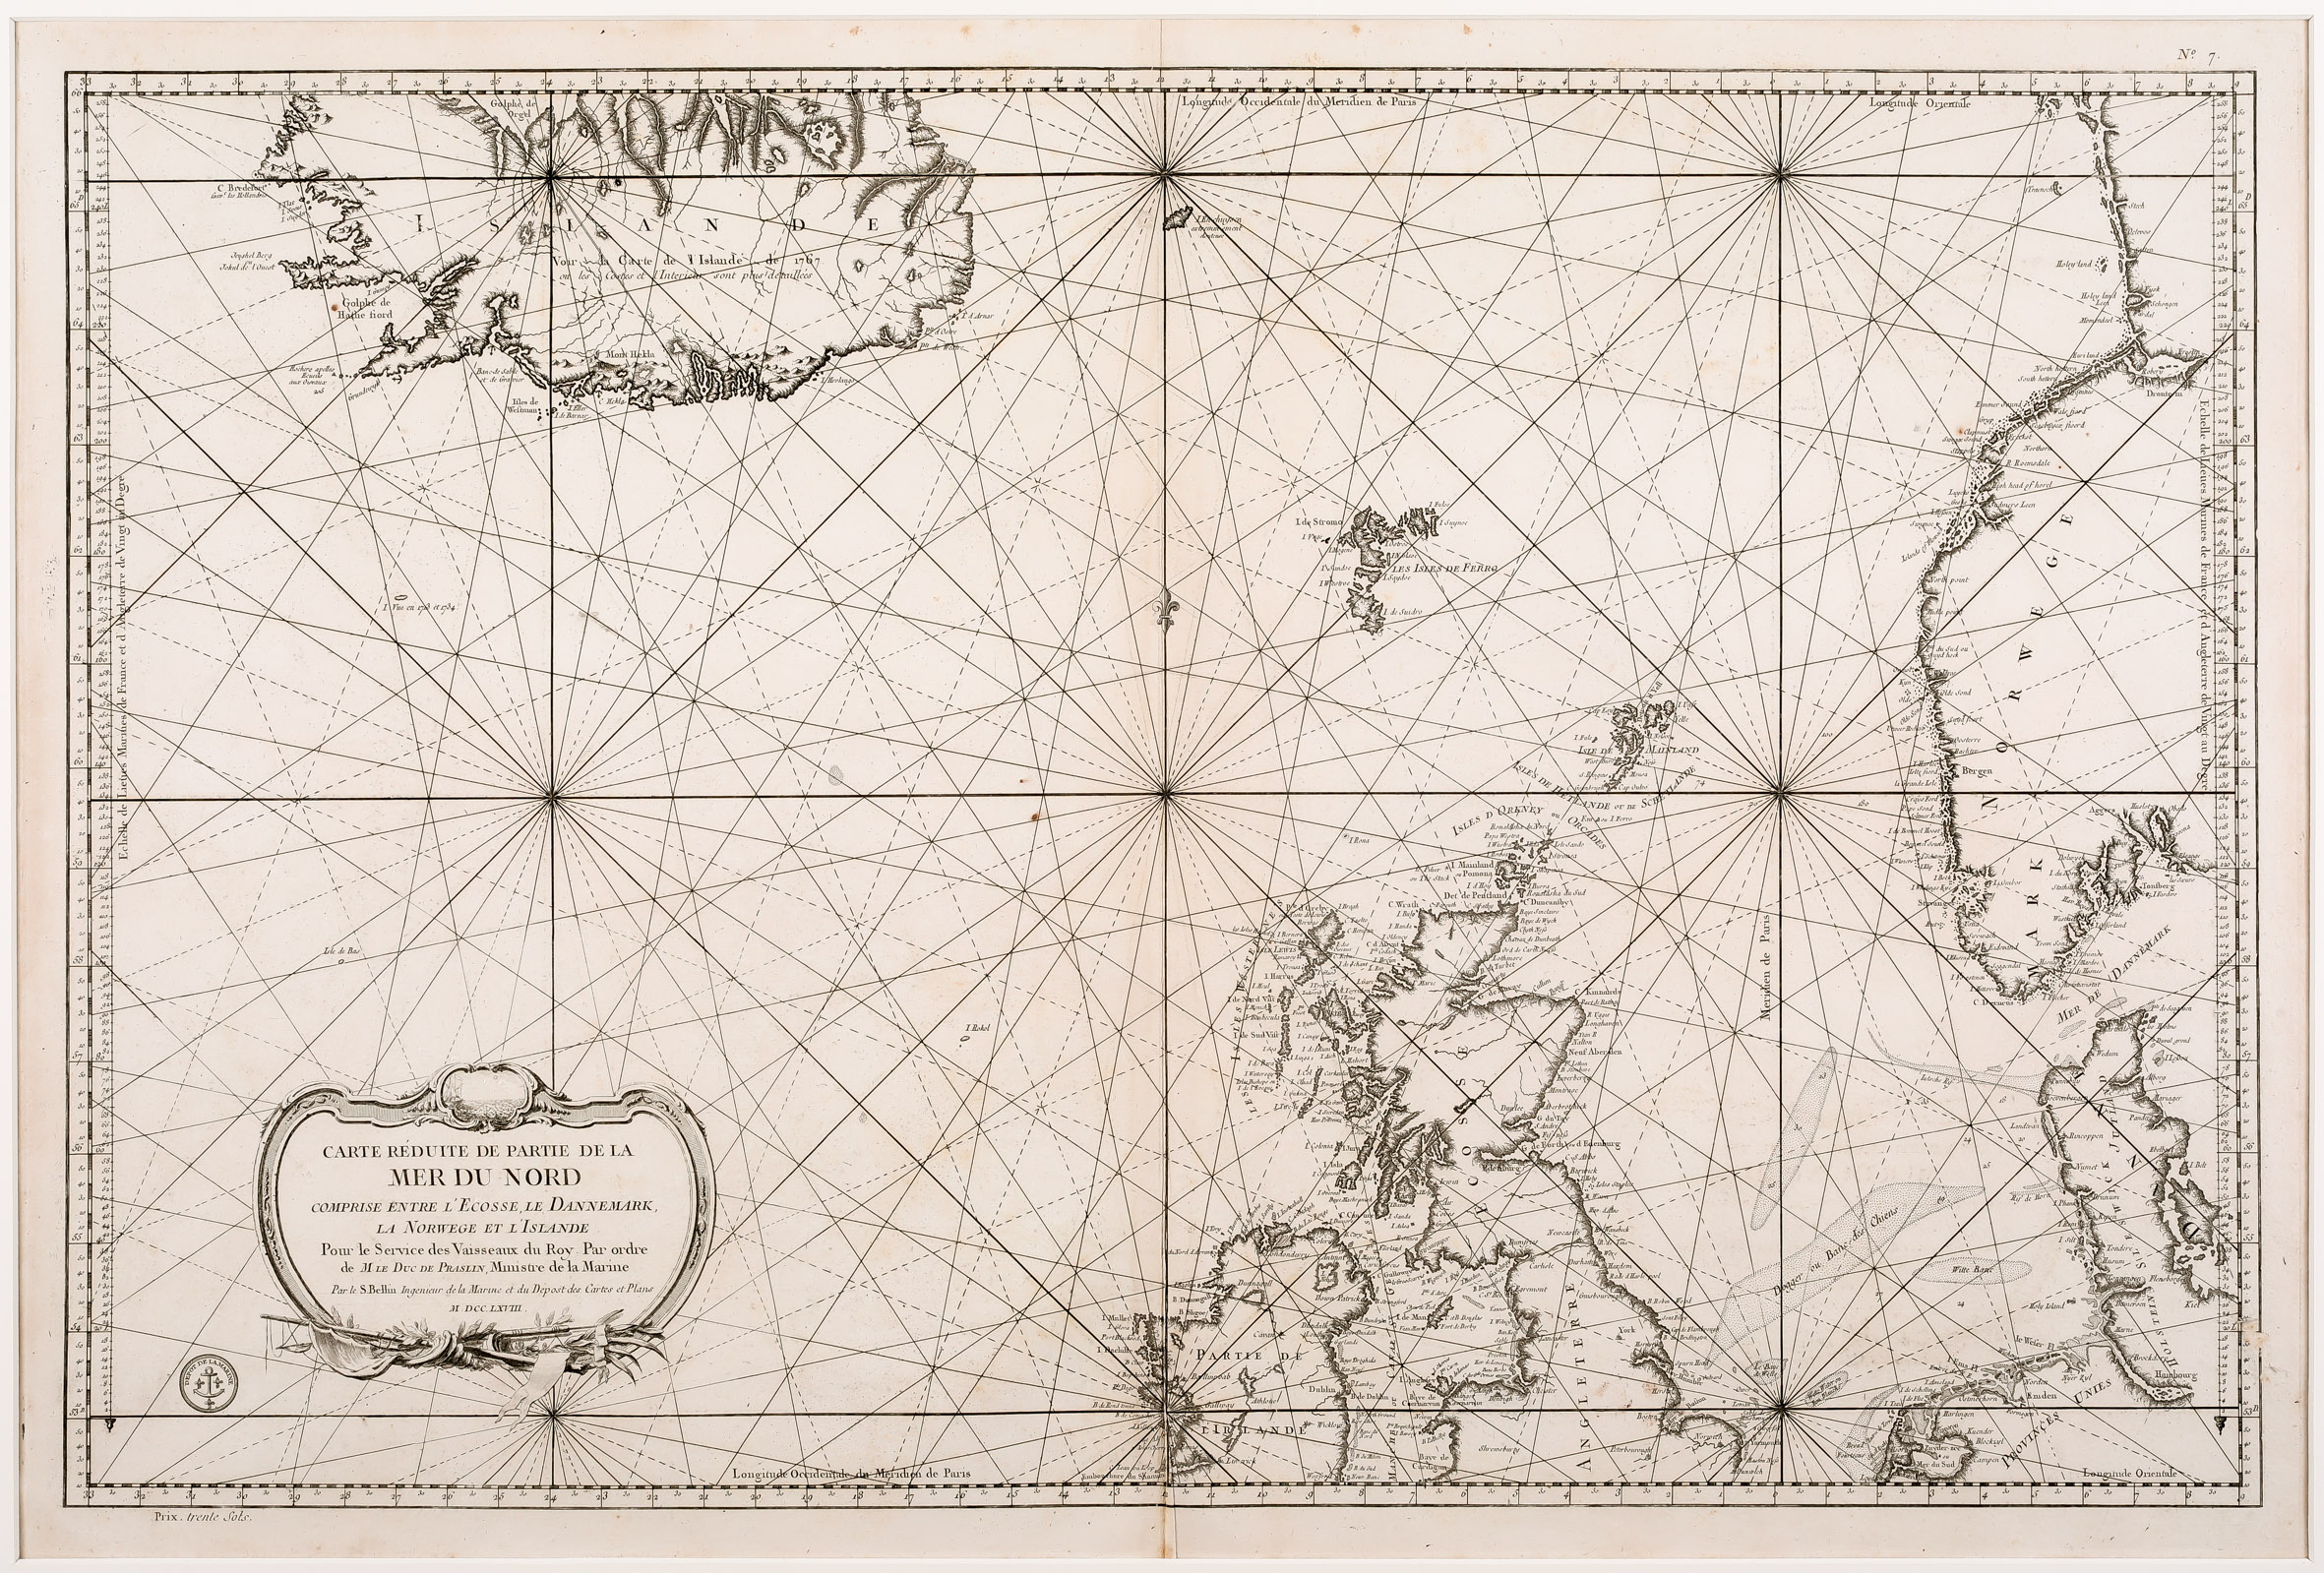 98. Carte Reduite de Partie de la Mer du Nord Comprise  Entre l‘Ecosse, le Dannemark, la Norwege et l‘Islande